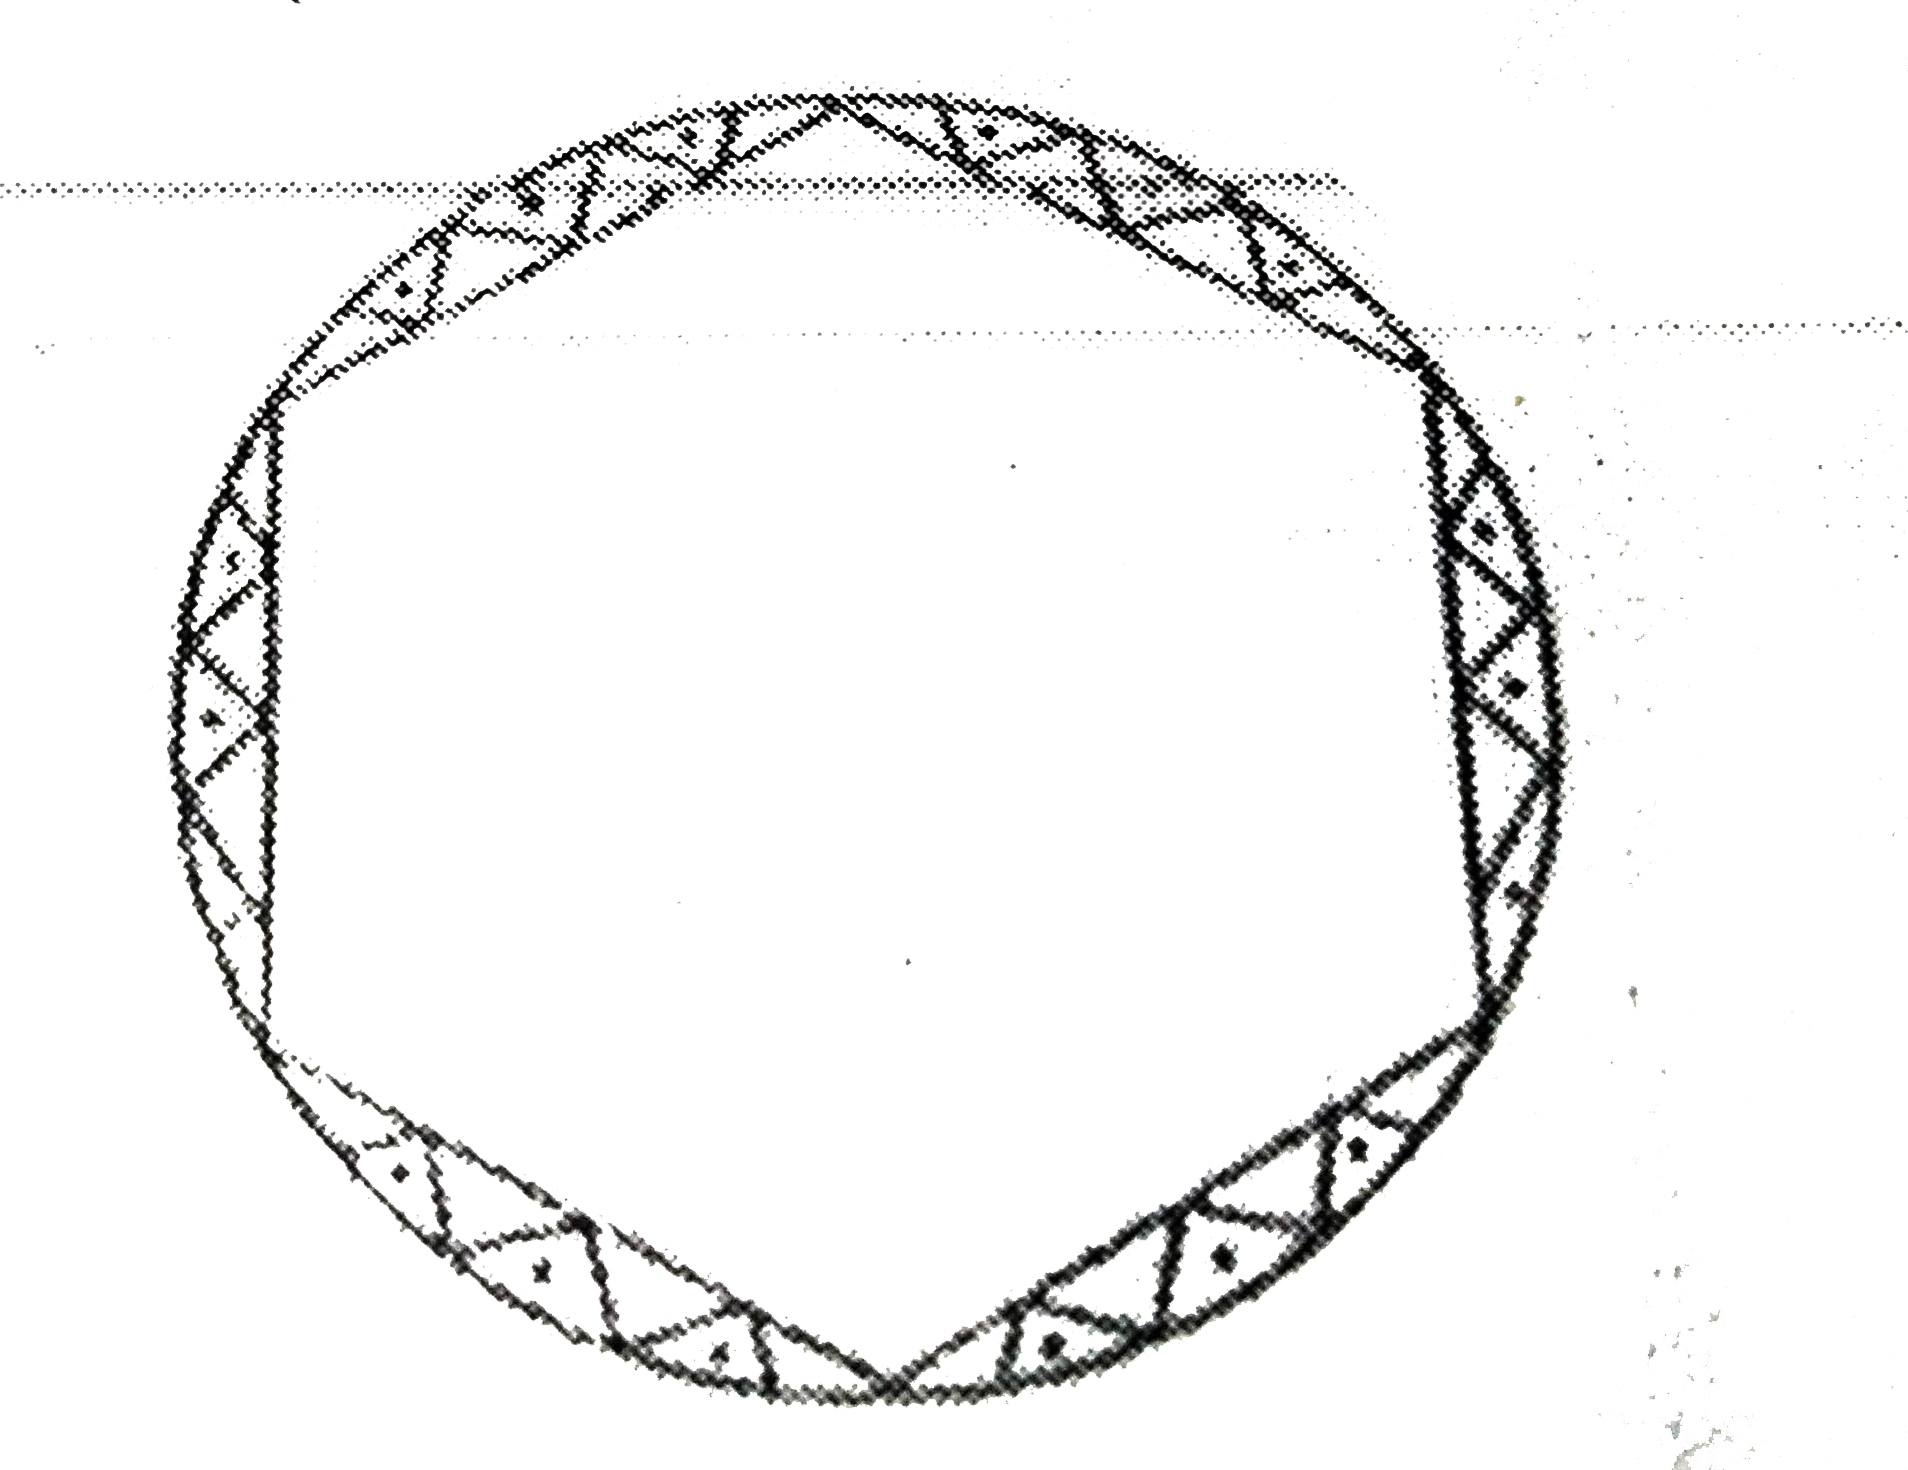 एक गोल मेजपोश पर 6 समान डिजाइन बने हुए है जैसे की आकृति में दर्शाया गया है यदि मेजपोश की त्रिज्या 28 सेमी है, तो Rs.0.35  प्रति वर्ग सेंटीमीटर की दर से इन डिजाइनों को बनाने की लागत ज्ञात कीजिए।